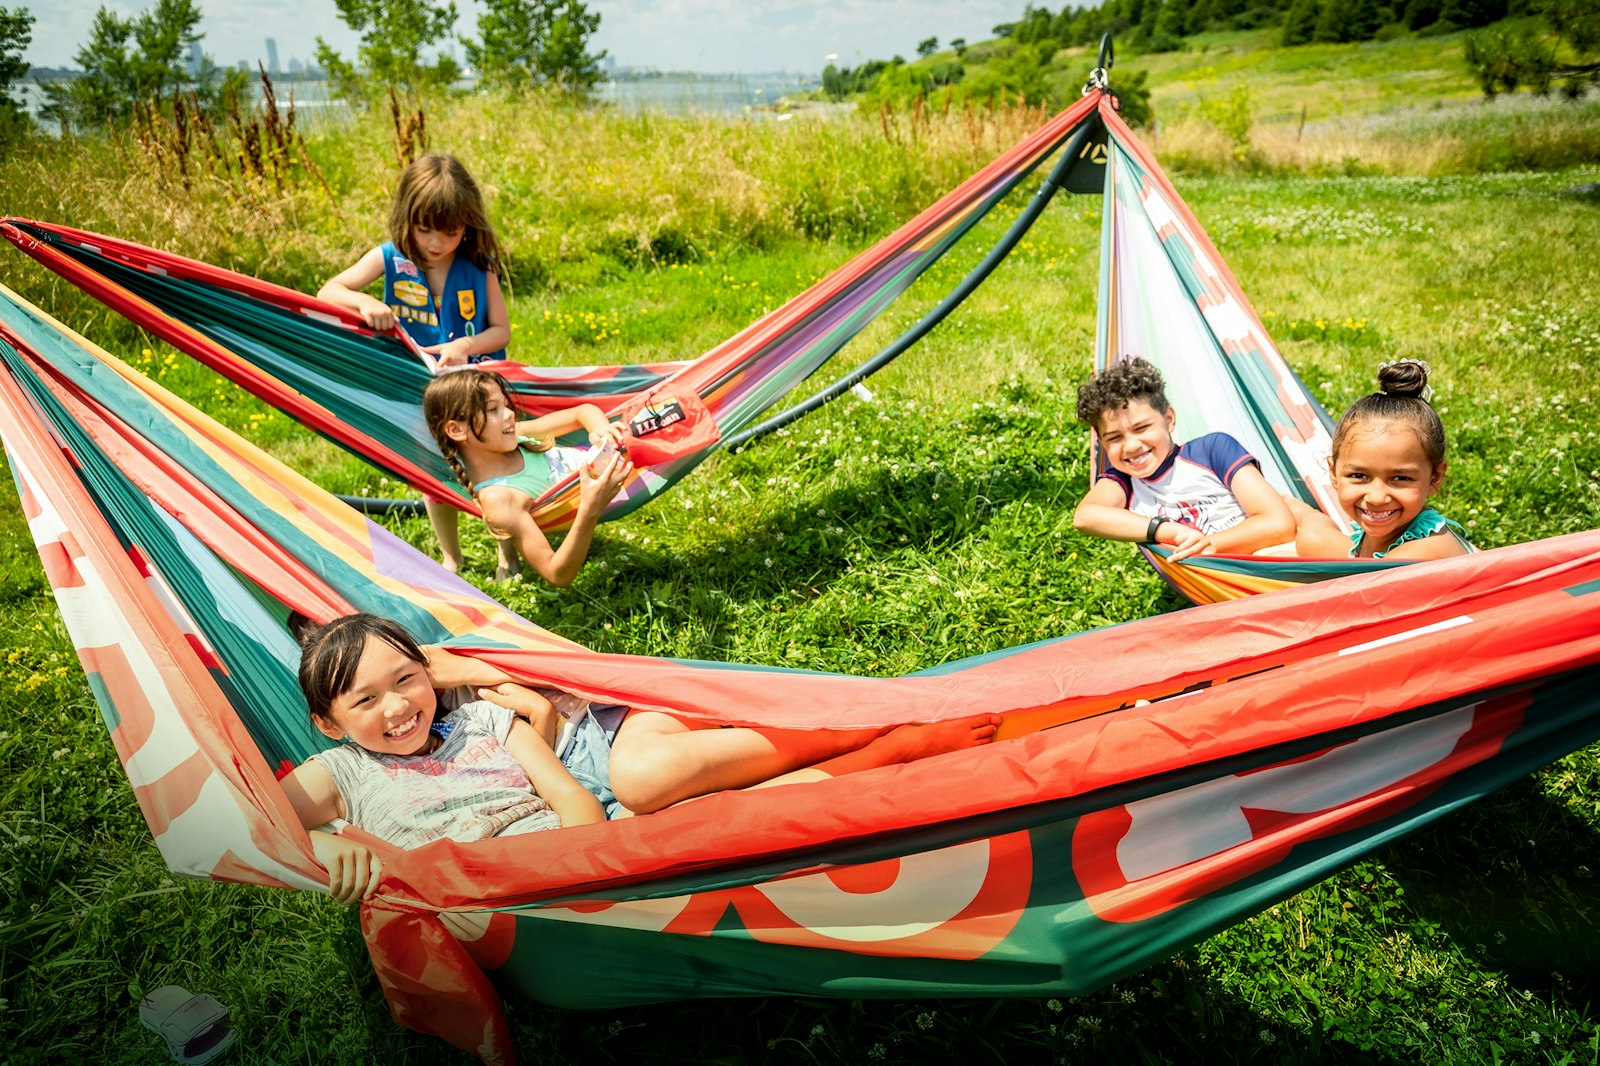 Five kids lounge in hammocks